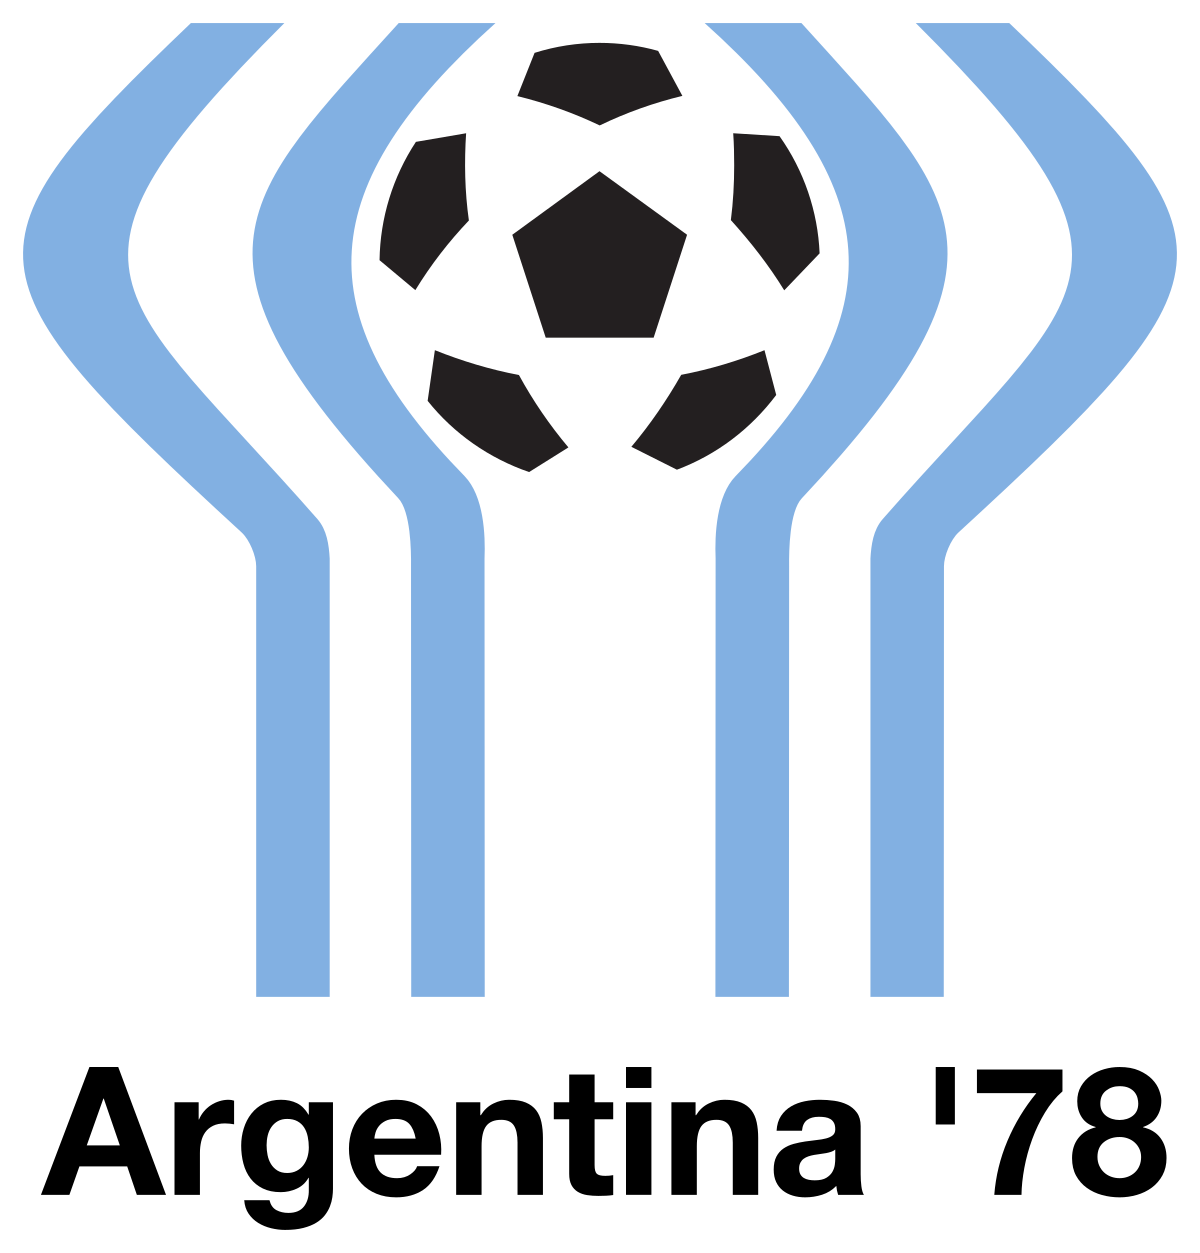 Campionato mondiale di calcio 1978 - Wikipedia